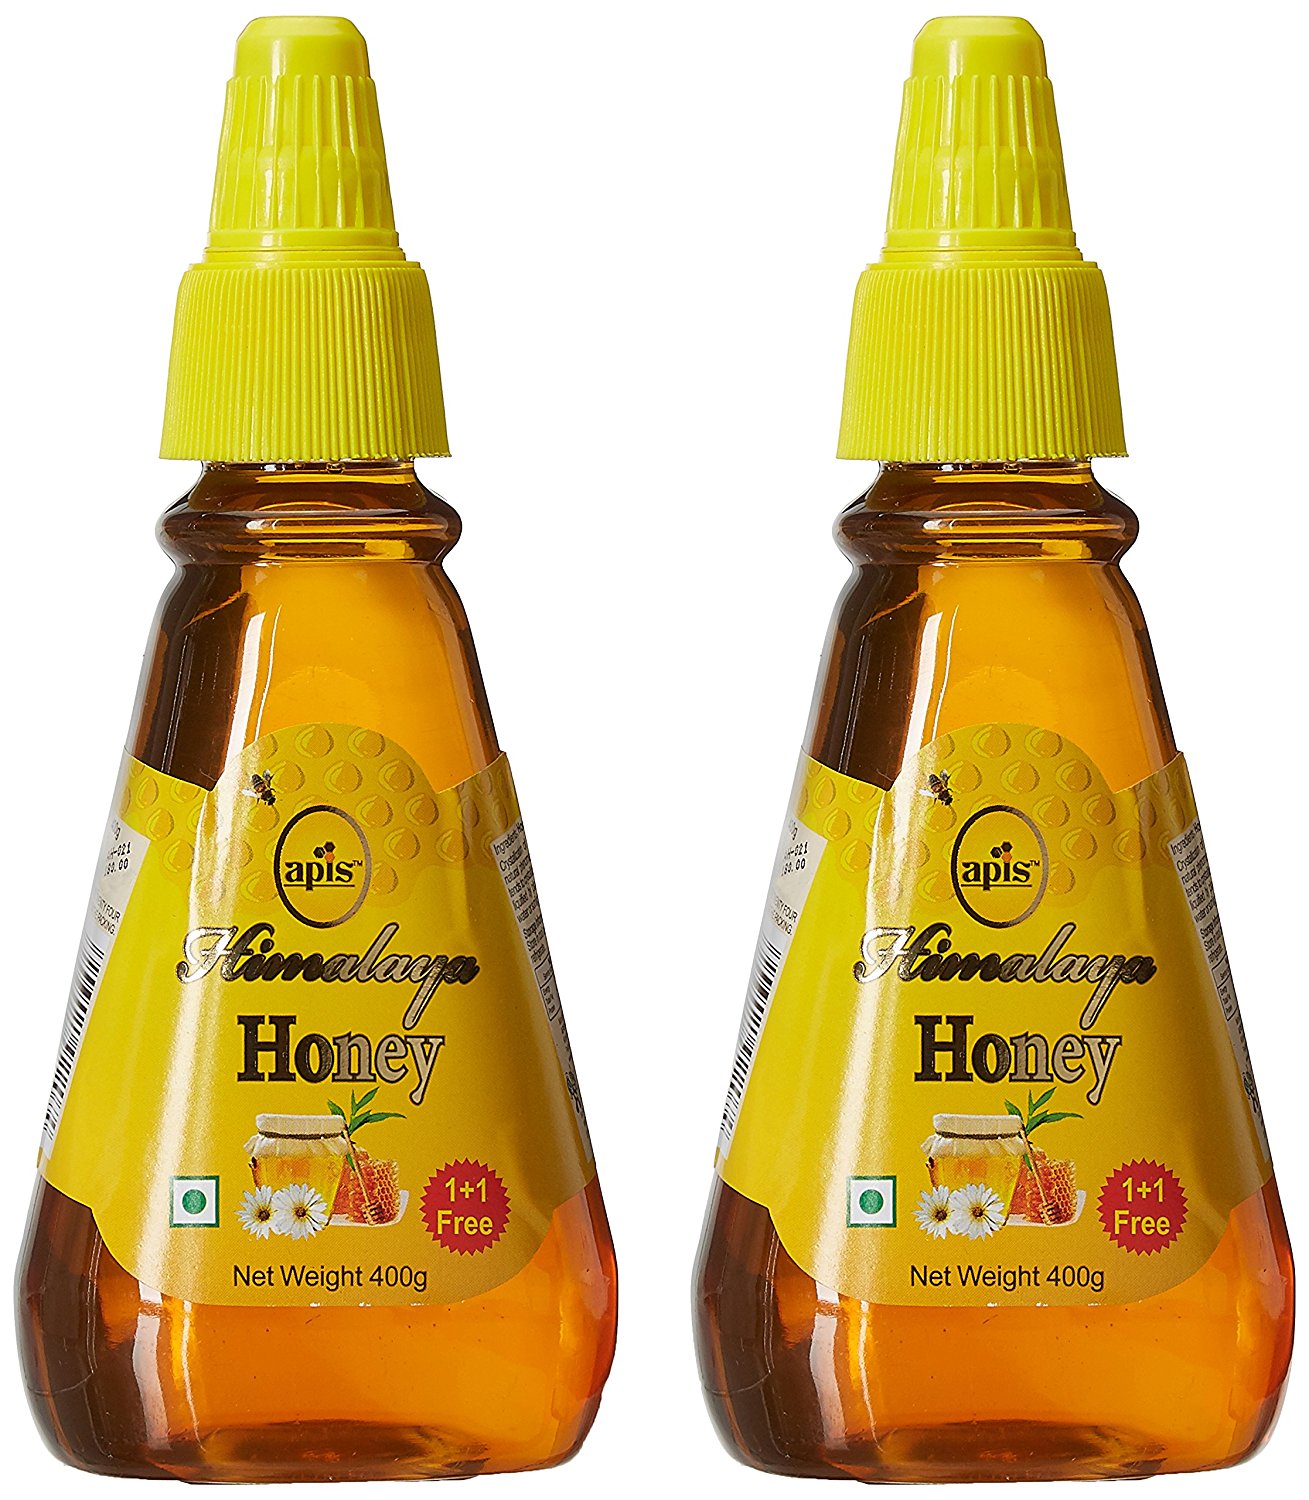 Amazon: Apis Himalaya Honey, 400g (Buy 1 Get 1 Free) at Rs 144